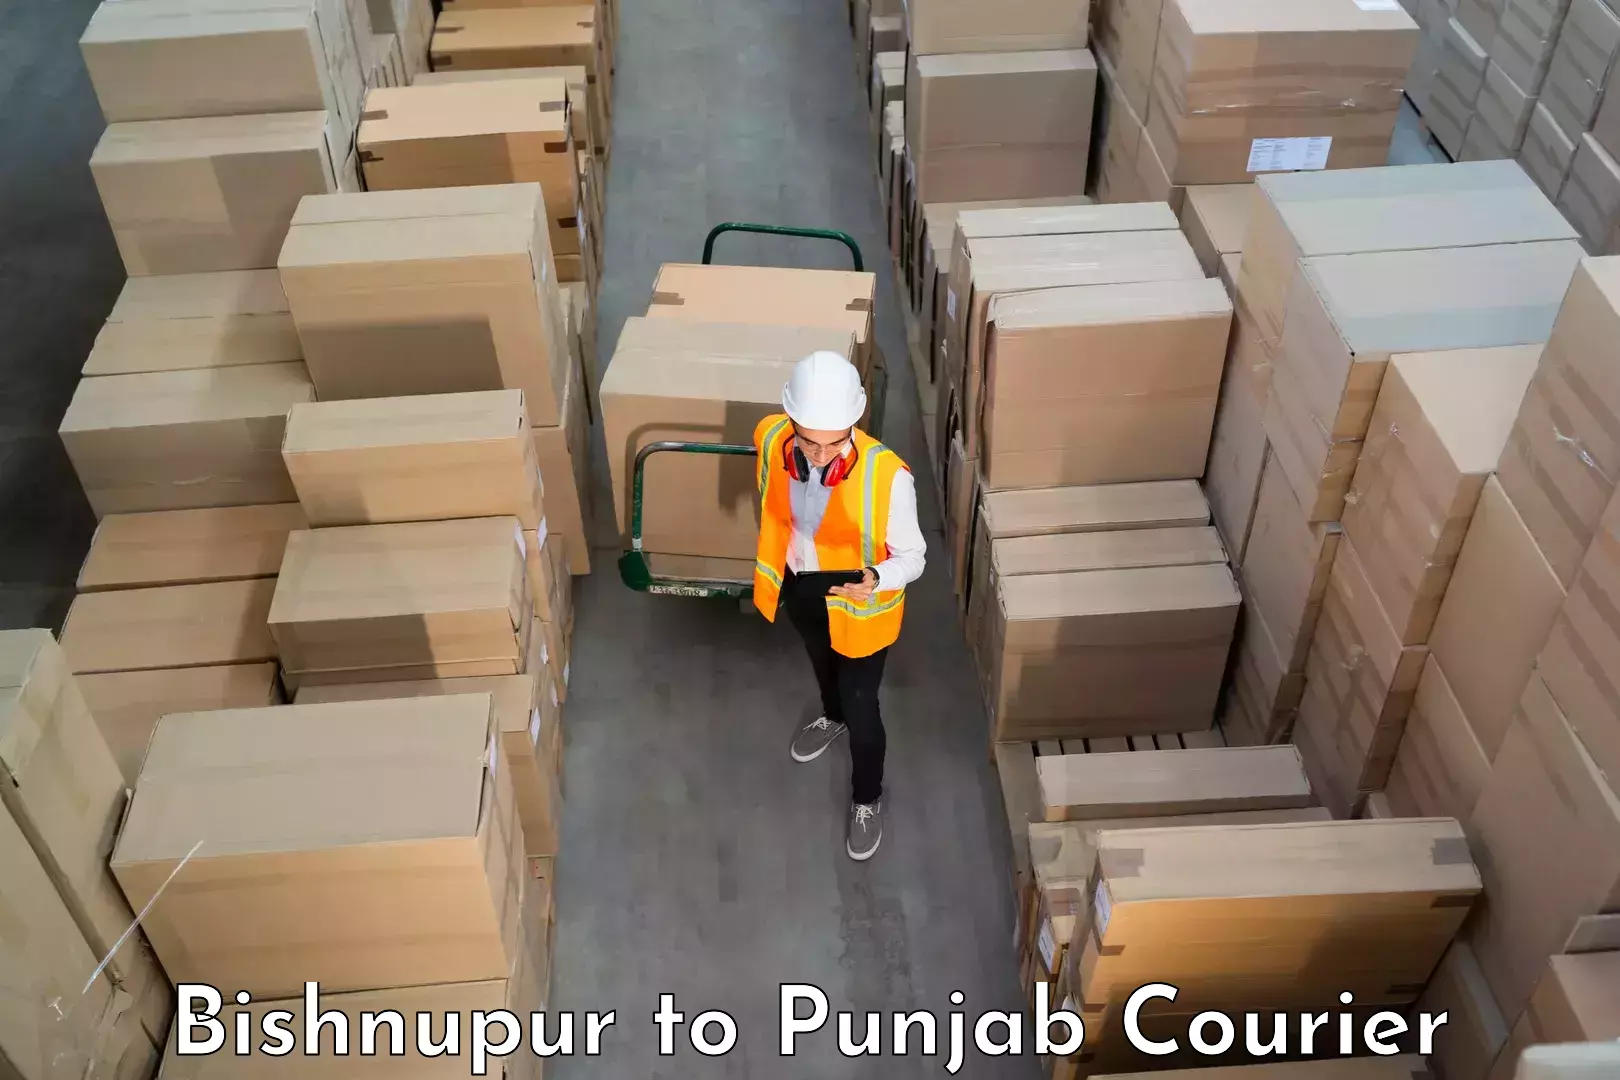 Quality moving company Bishnupur to Ludhiana